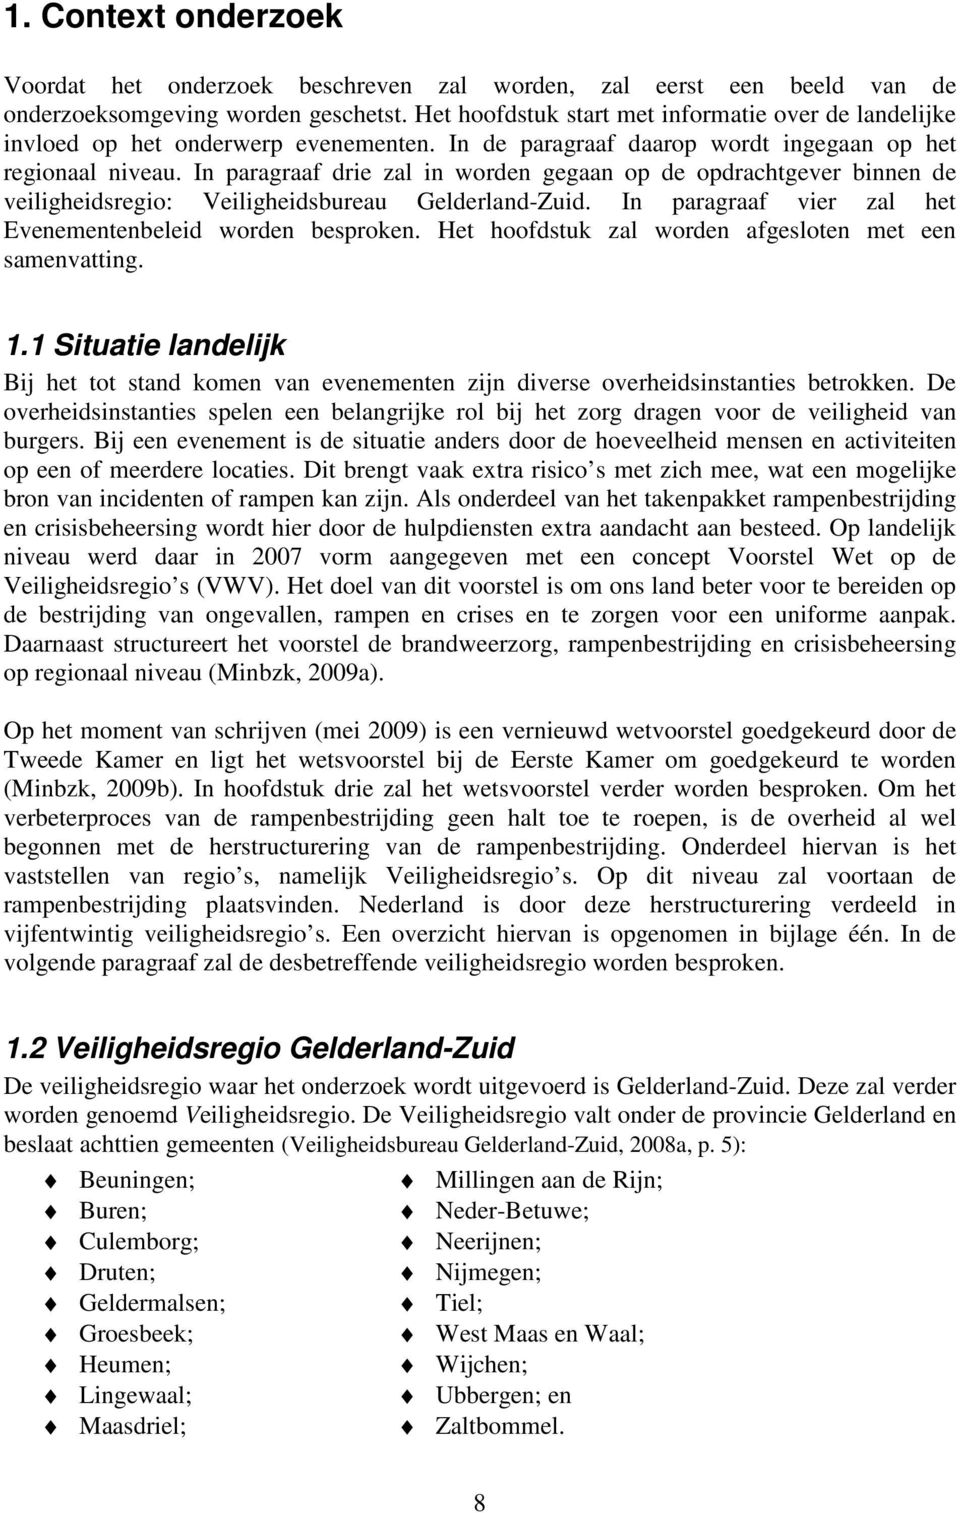 In paragraaf drie zal in worden gegaan op de opdrachtgever binnen de veiligheidsregio: Veiligheidsbureau Gelderland-Zuid. In paragraaf vier zal het Evenementenbeleid worden besproken.